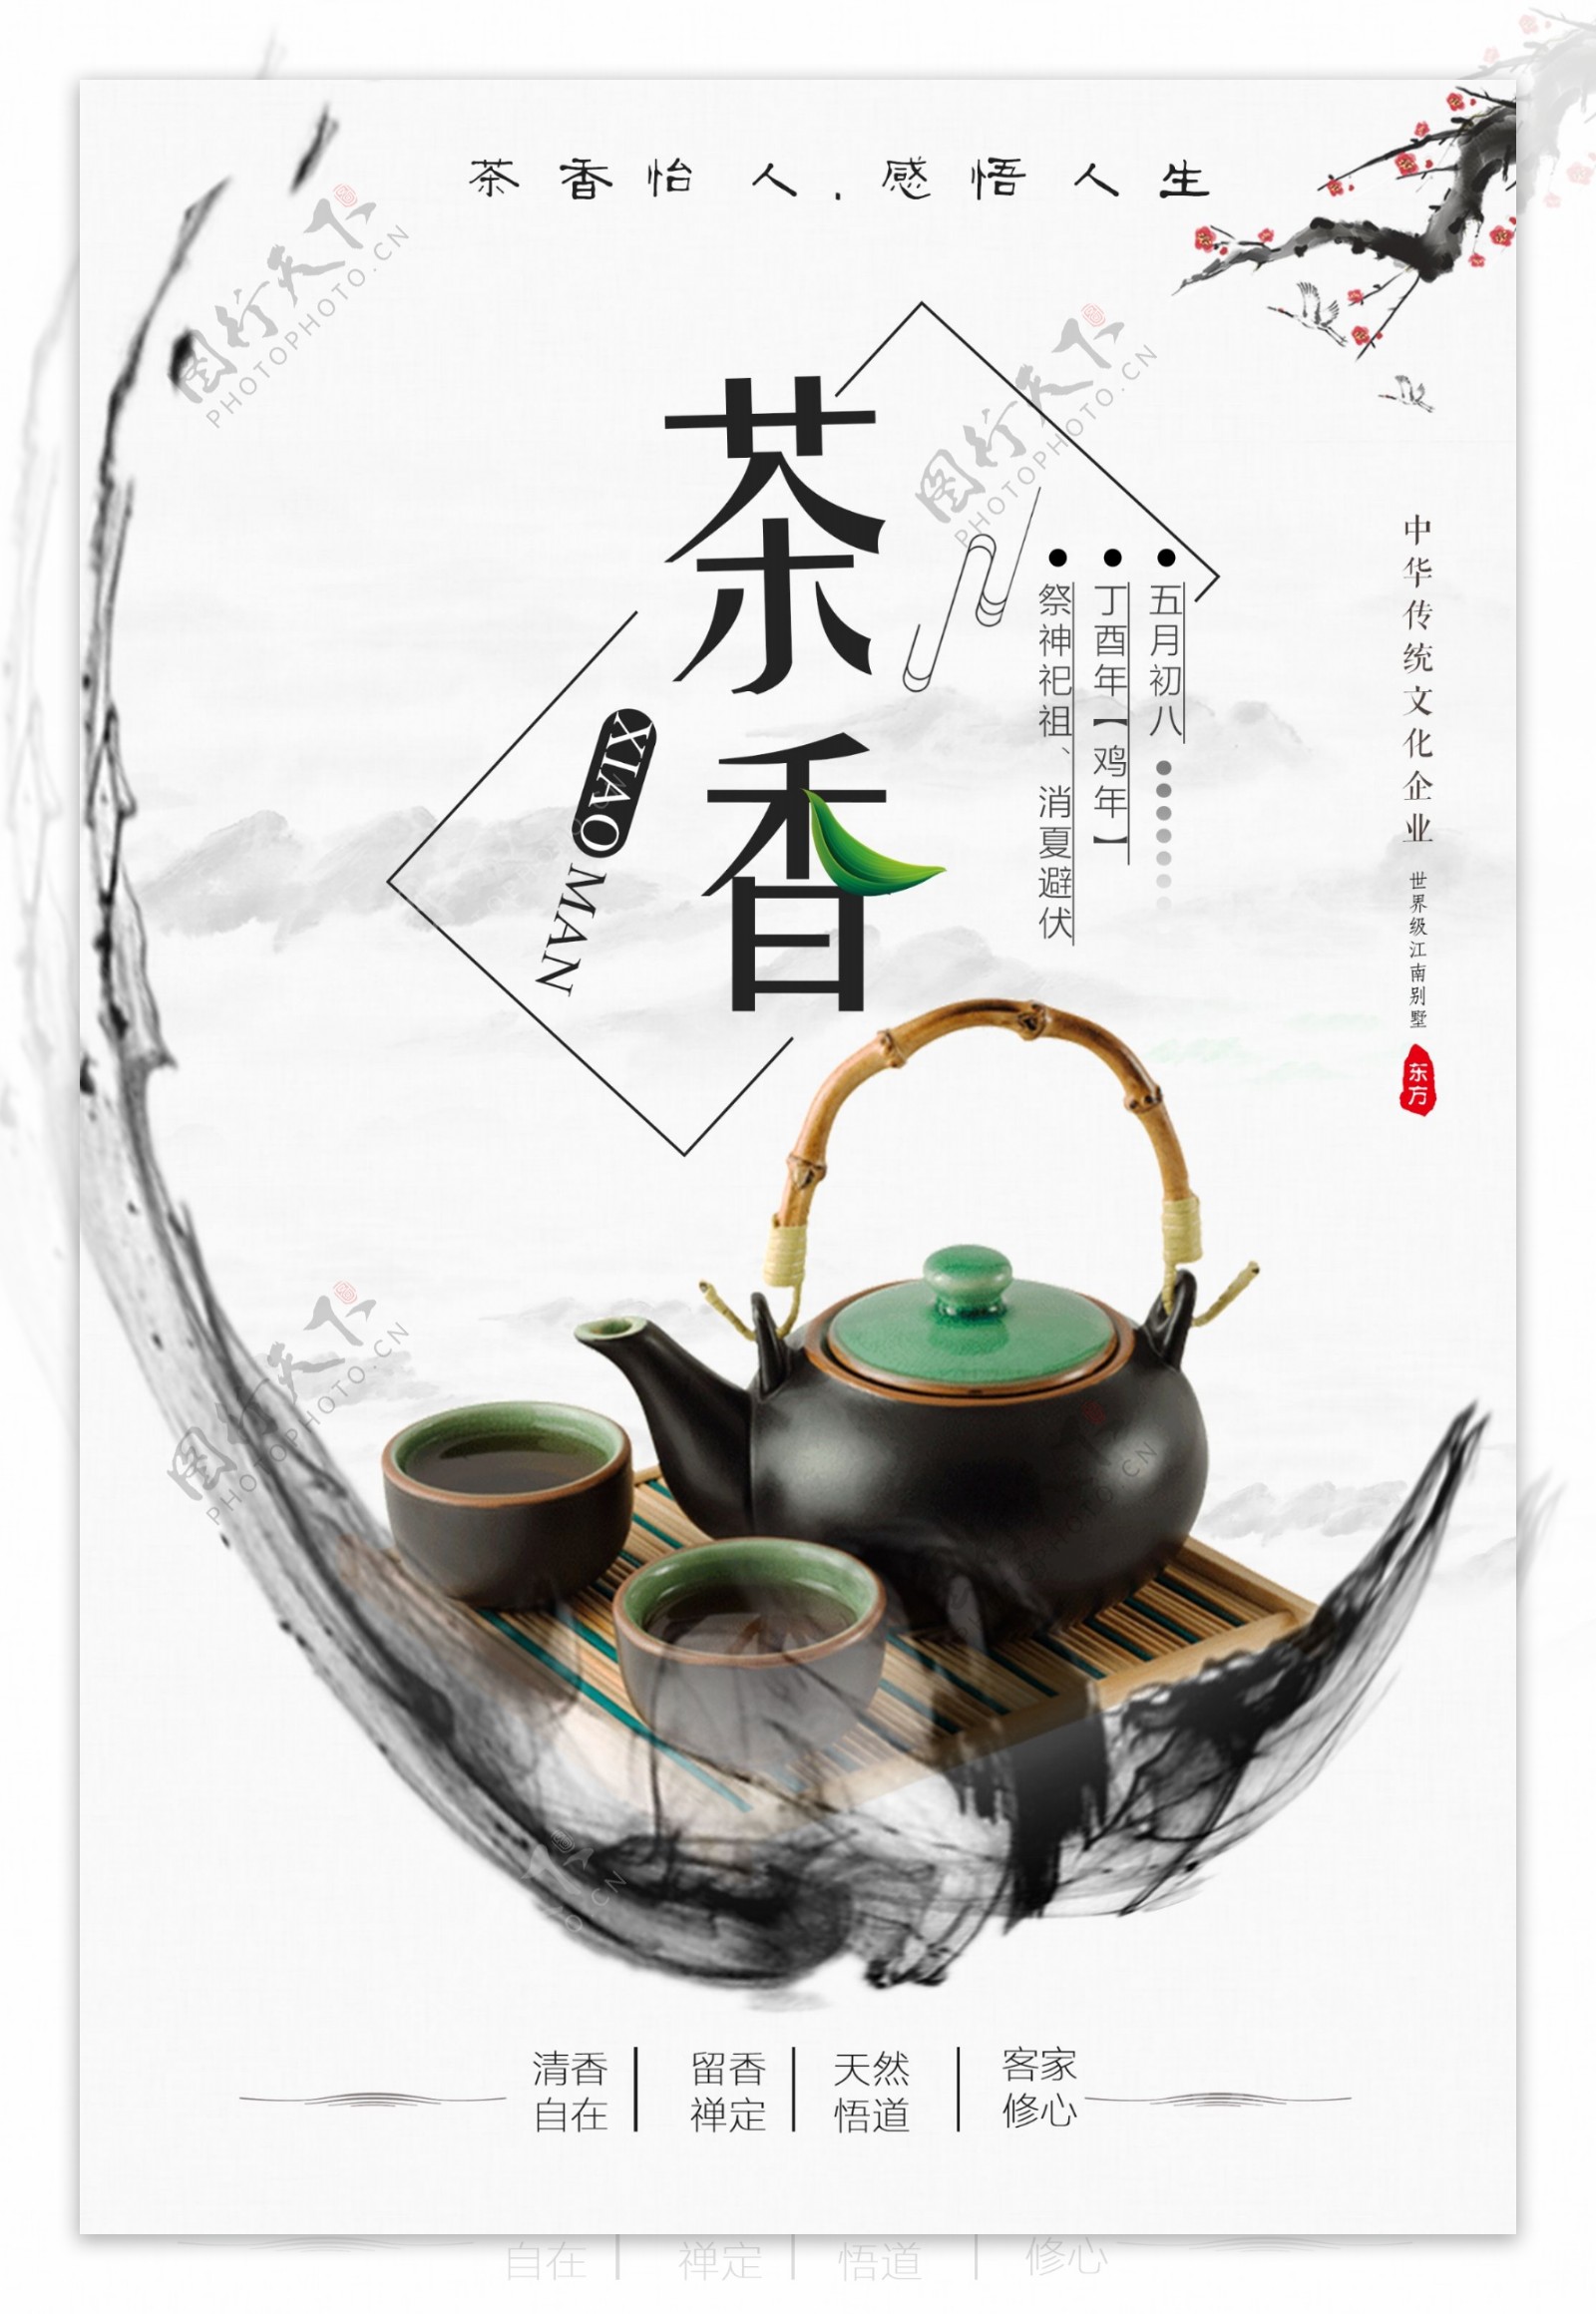 古典中国风茶香怡人饮茶文化海报